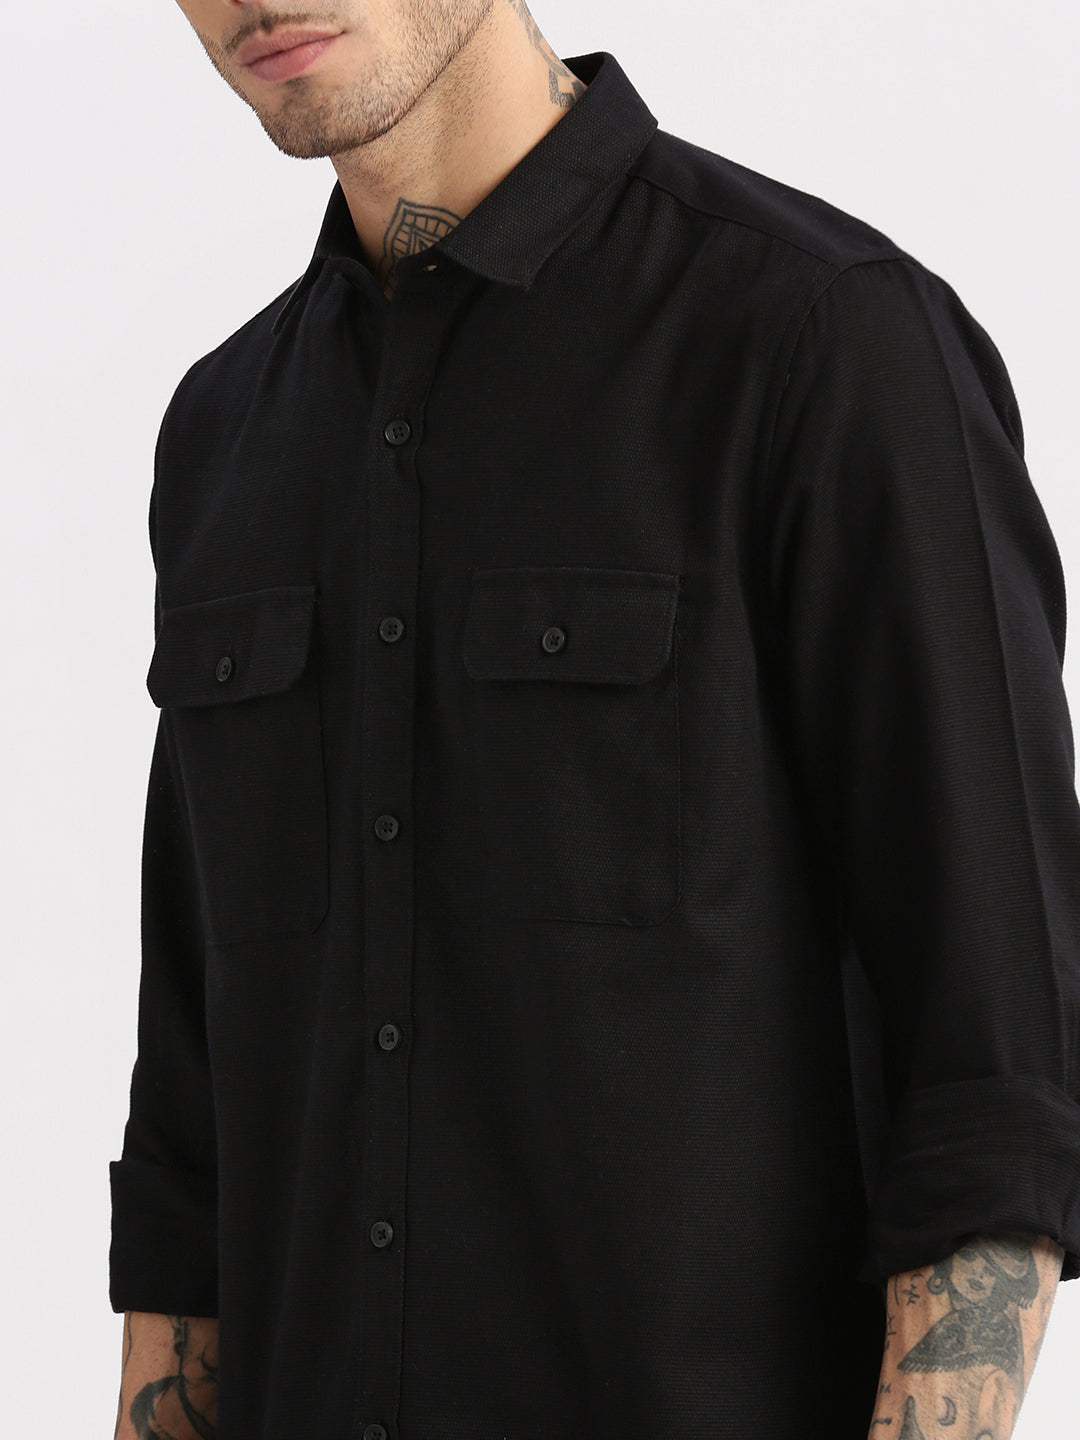 Men Spread Collar Solid Black Casual Shirt